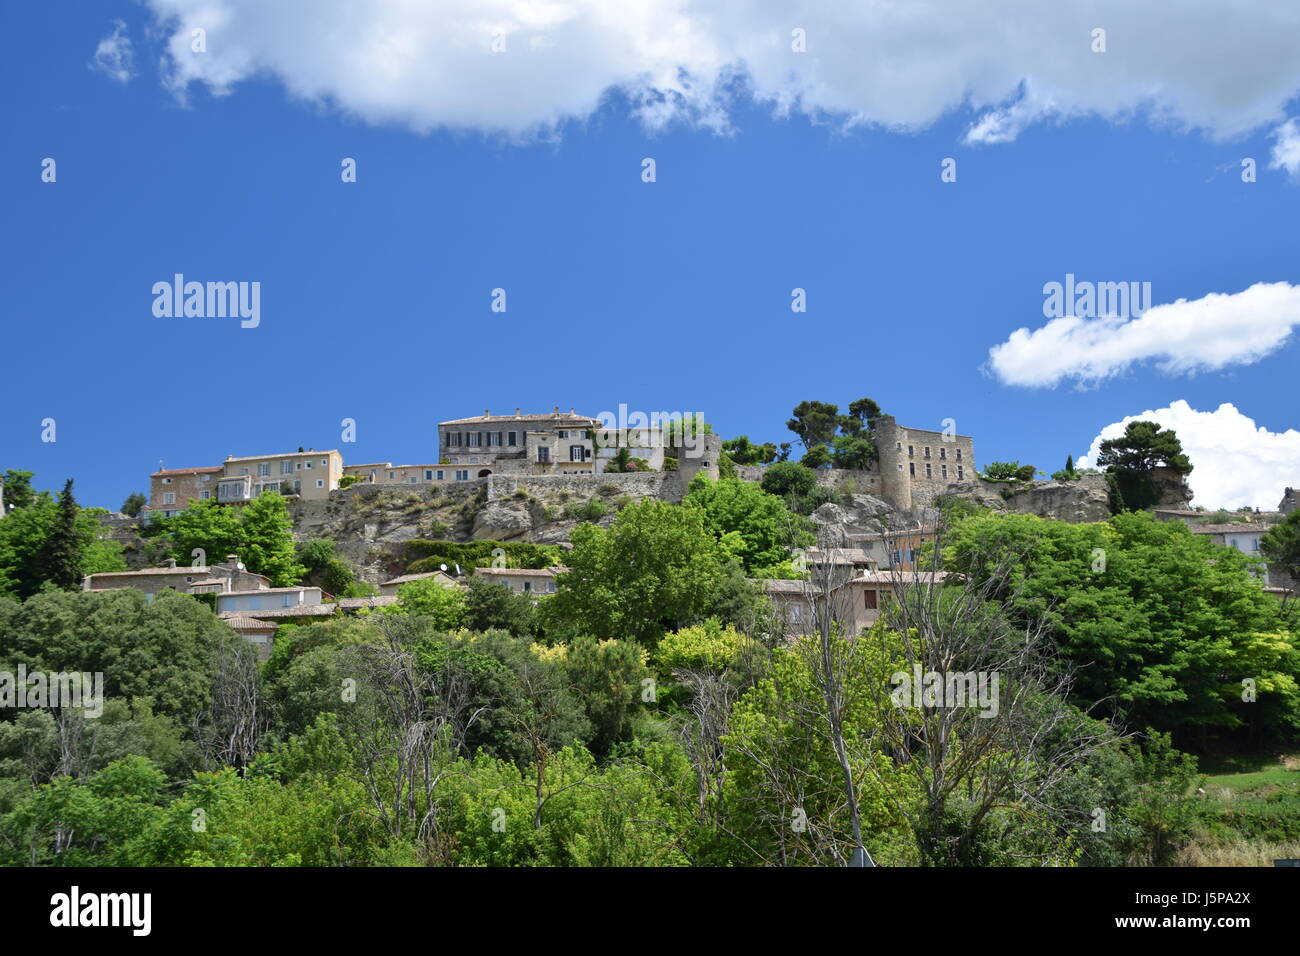 Le village de Menerbes et la campagne environnante du Luberon en Provence, France Banque D'Images